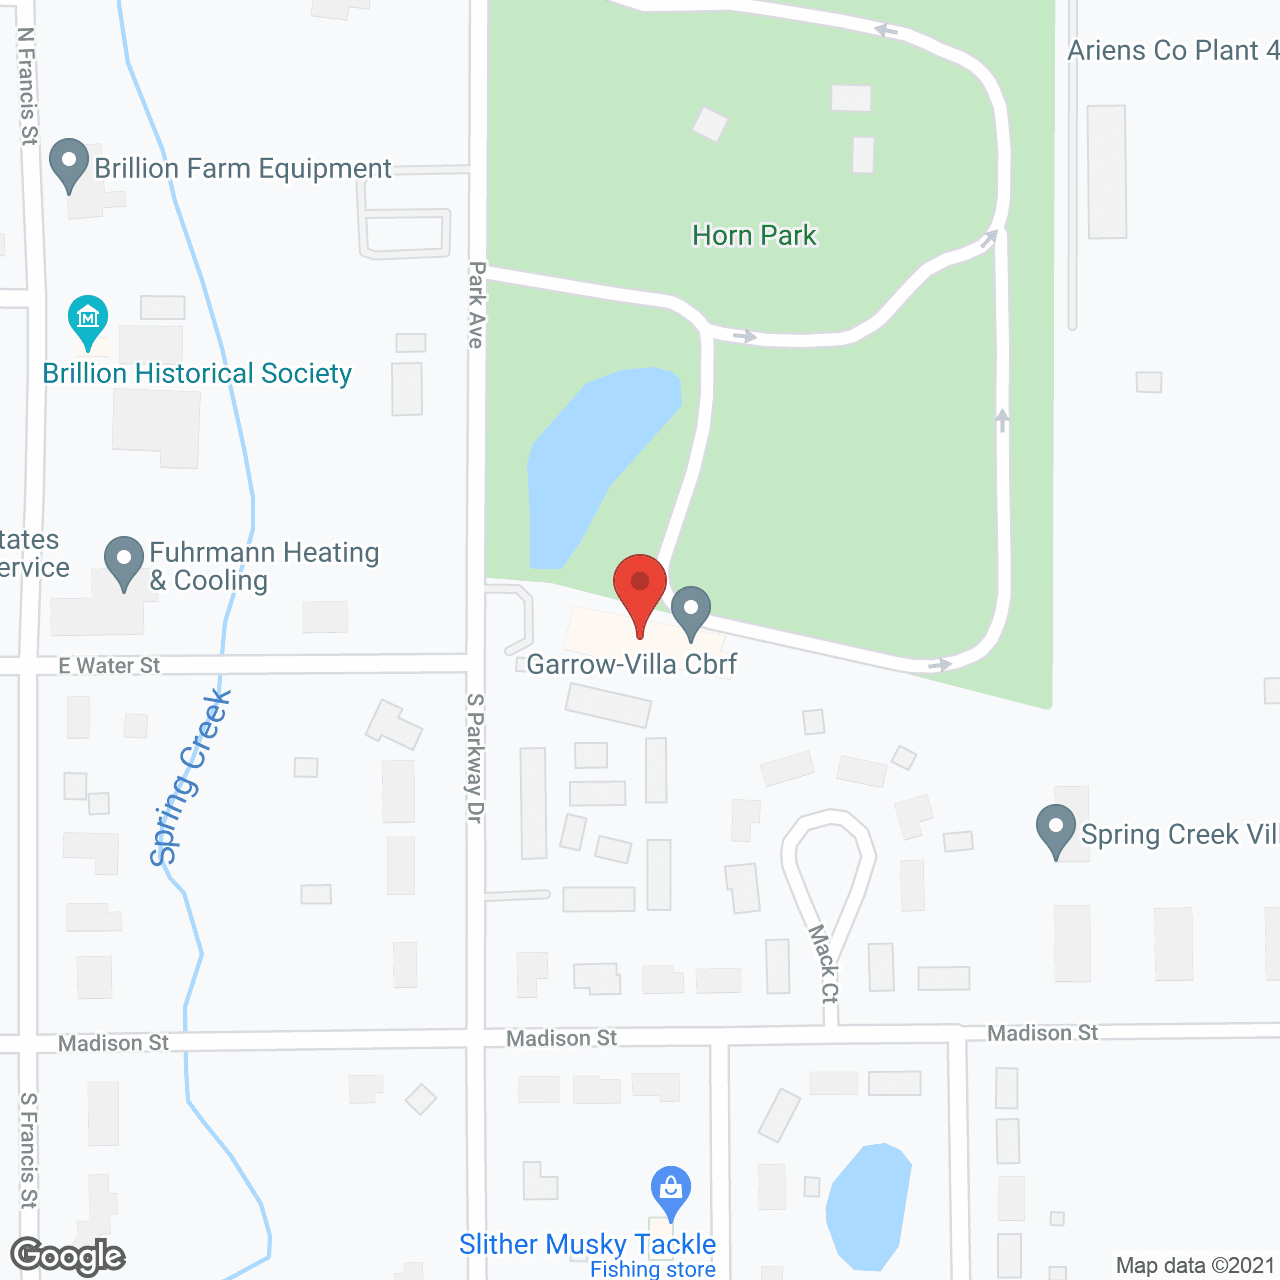 Garrow-Villa CBRF in google map